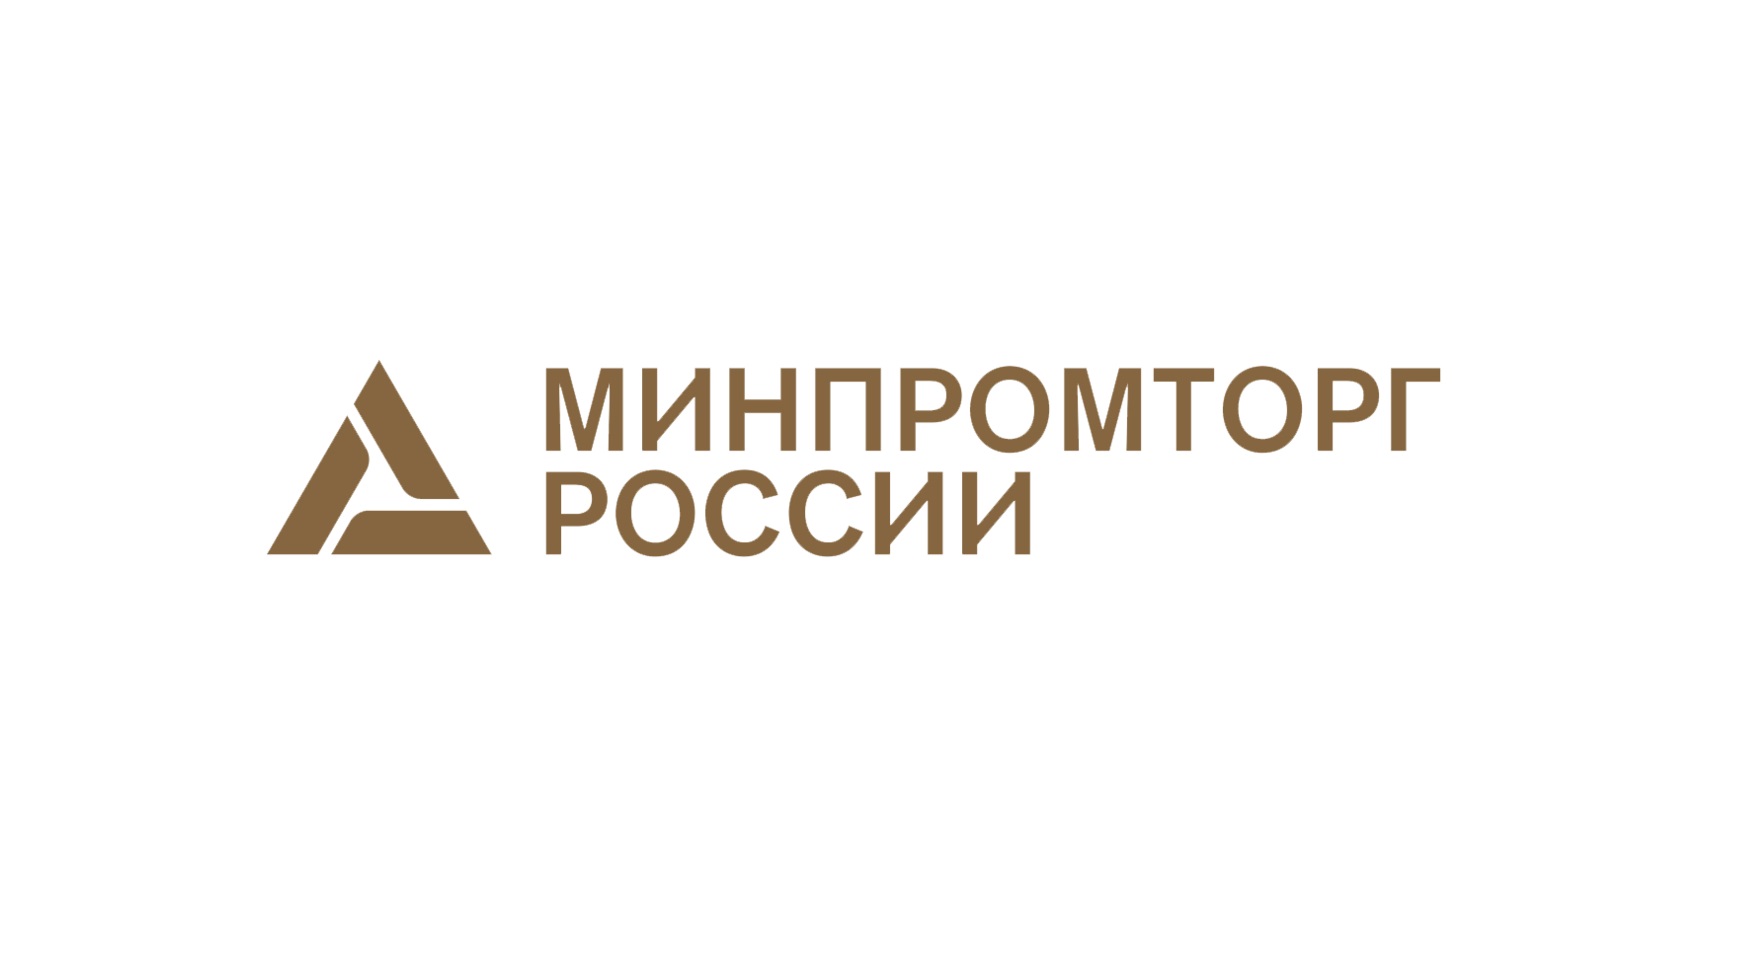 Рекомендации Министерства промышленности и торговли Российской Федерации для организаций, осуществляющих деятельность в сфере торговли, общественного питания и бытовых услуг.